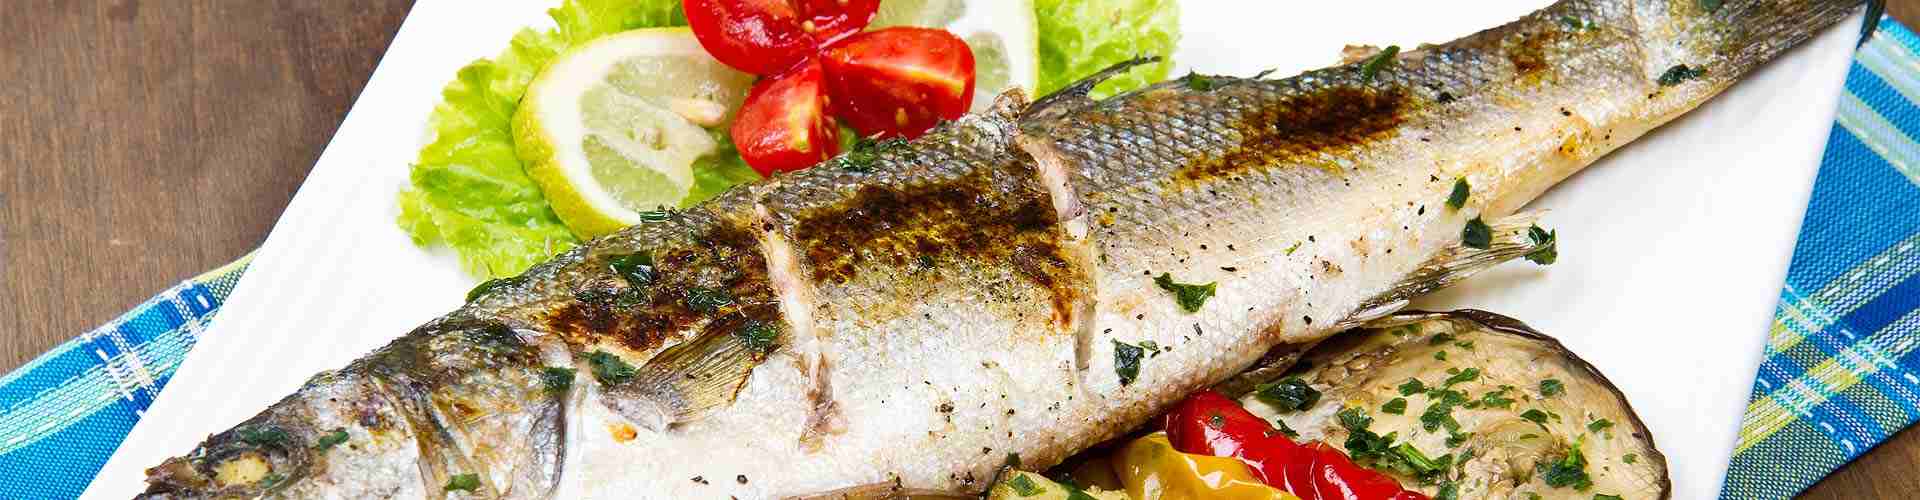 ¿Dónde comer pescado en Torrelameu?